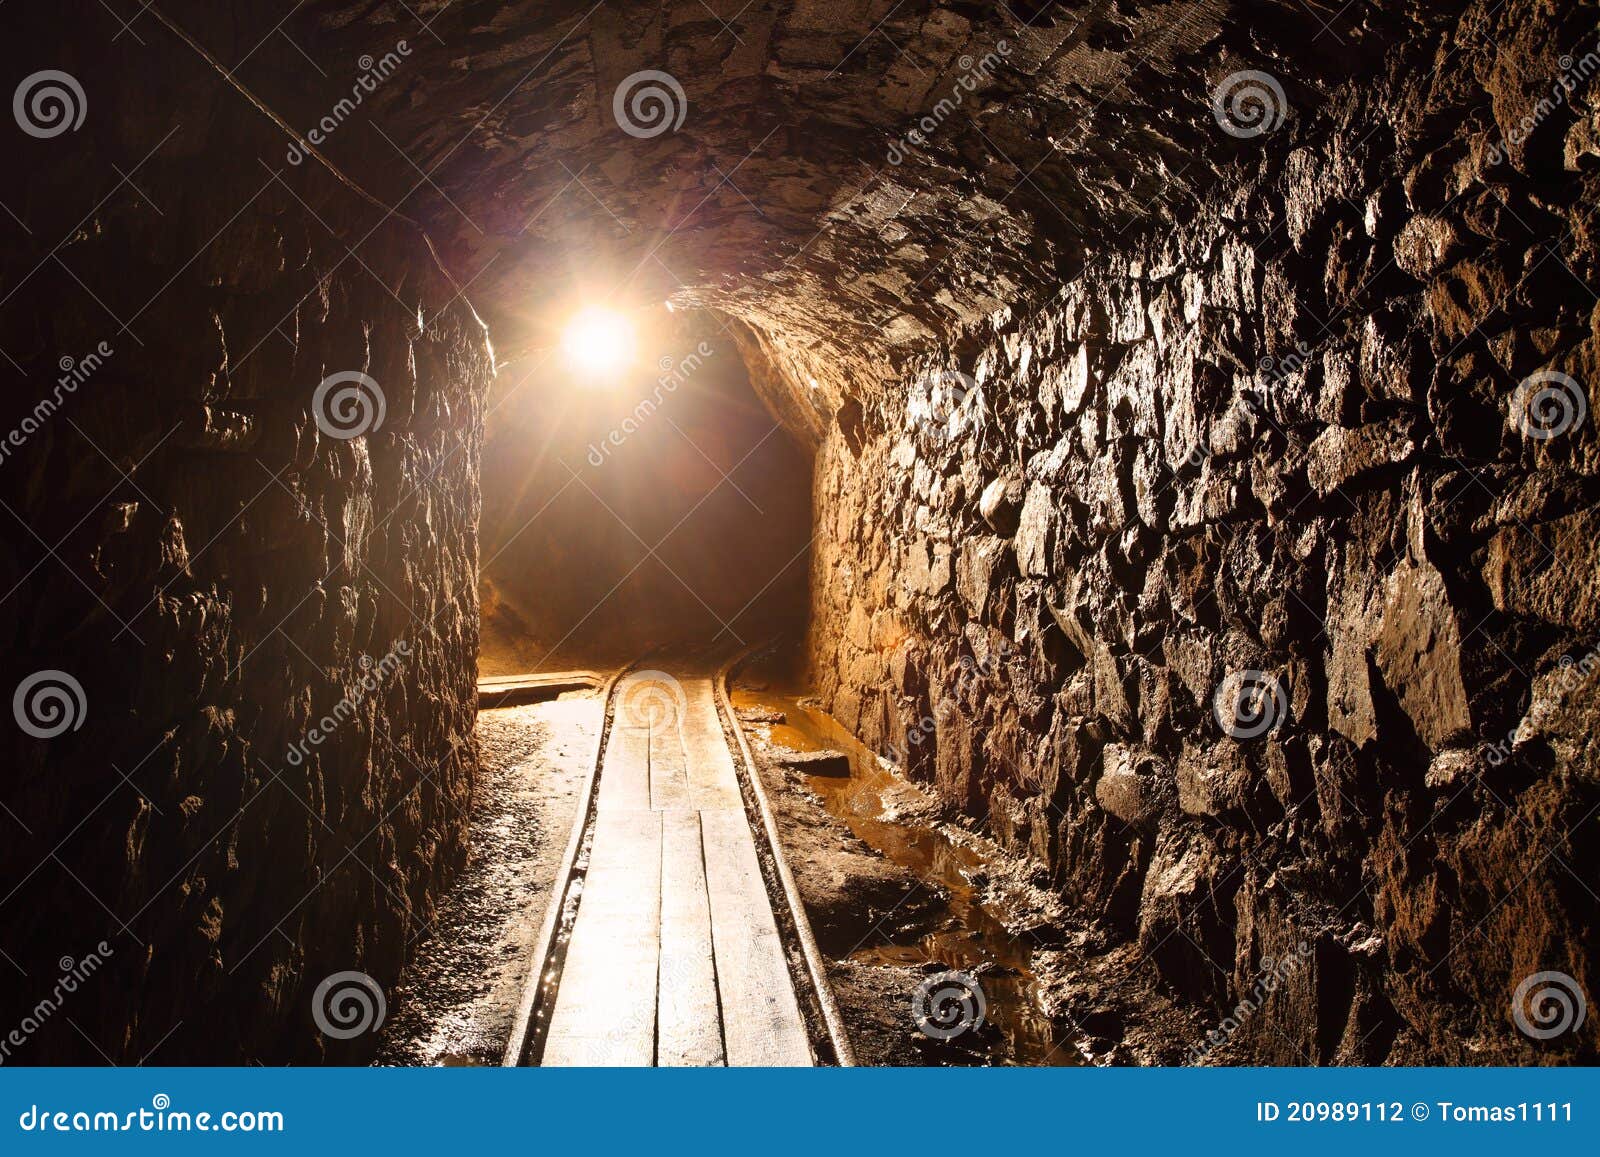 mine tunnel - historical gold, silver, copper mine